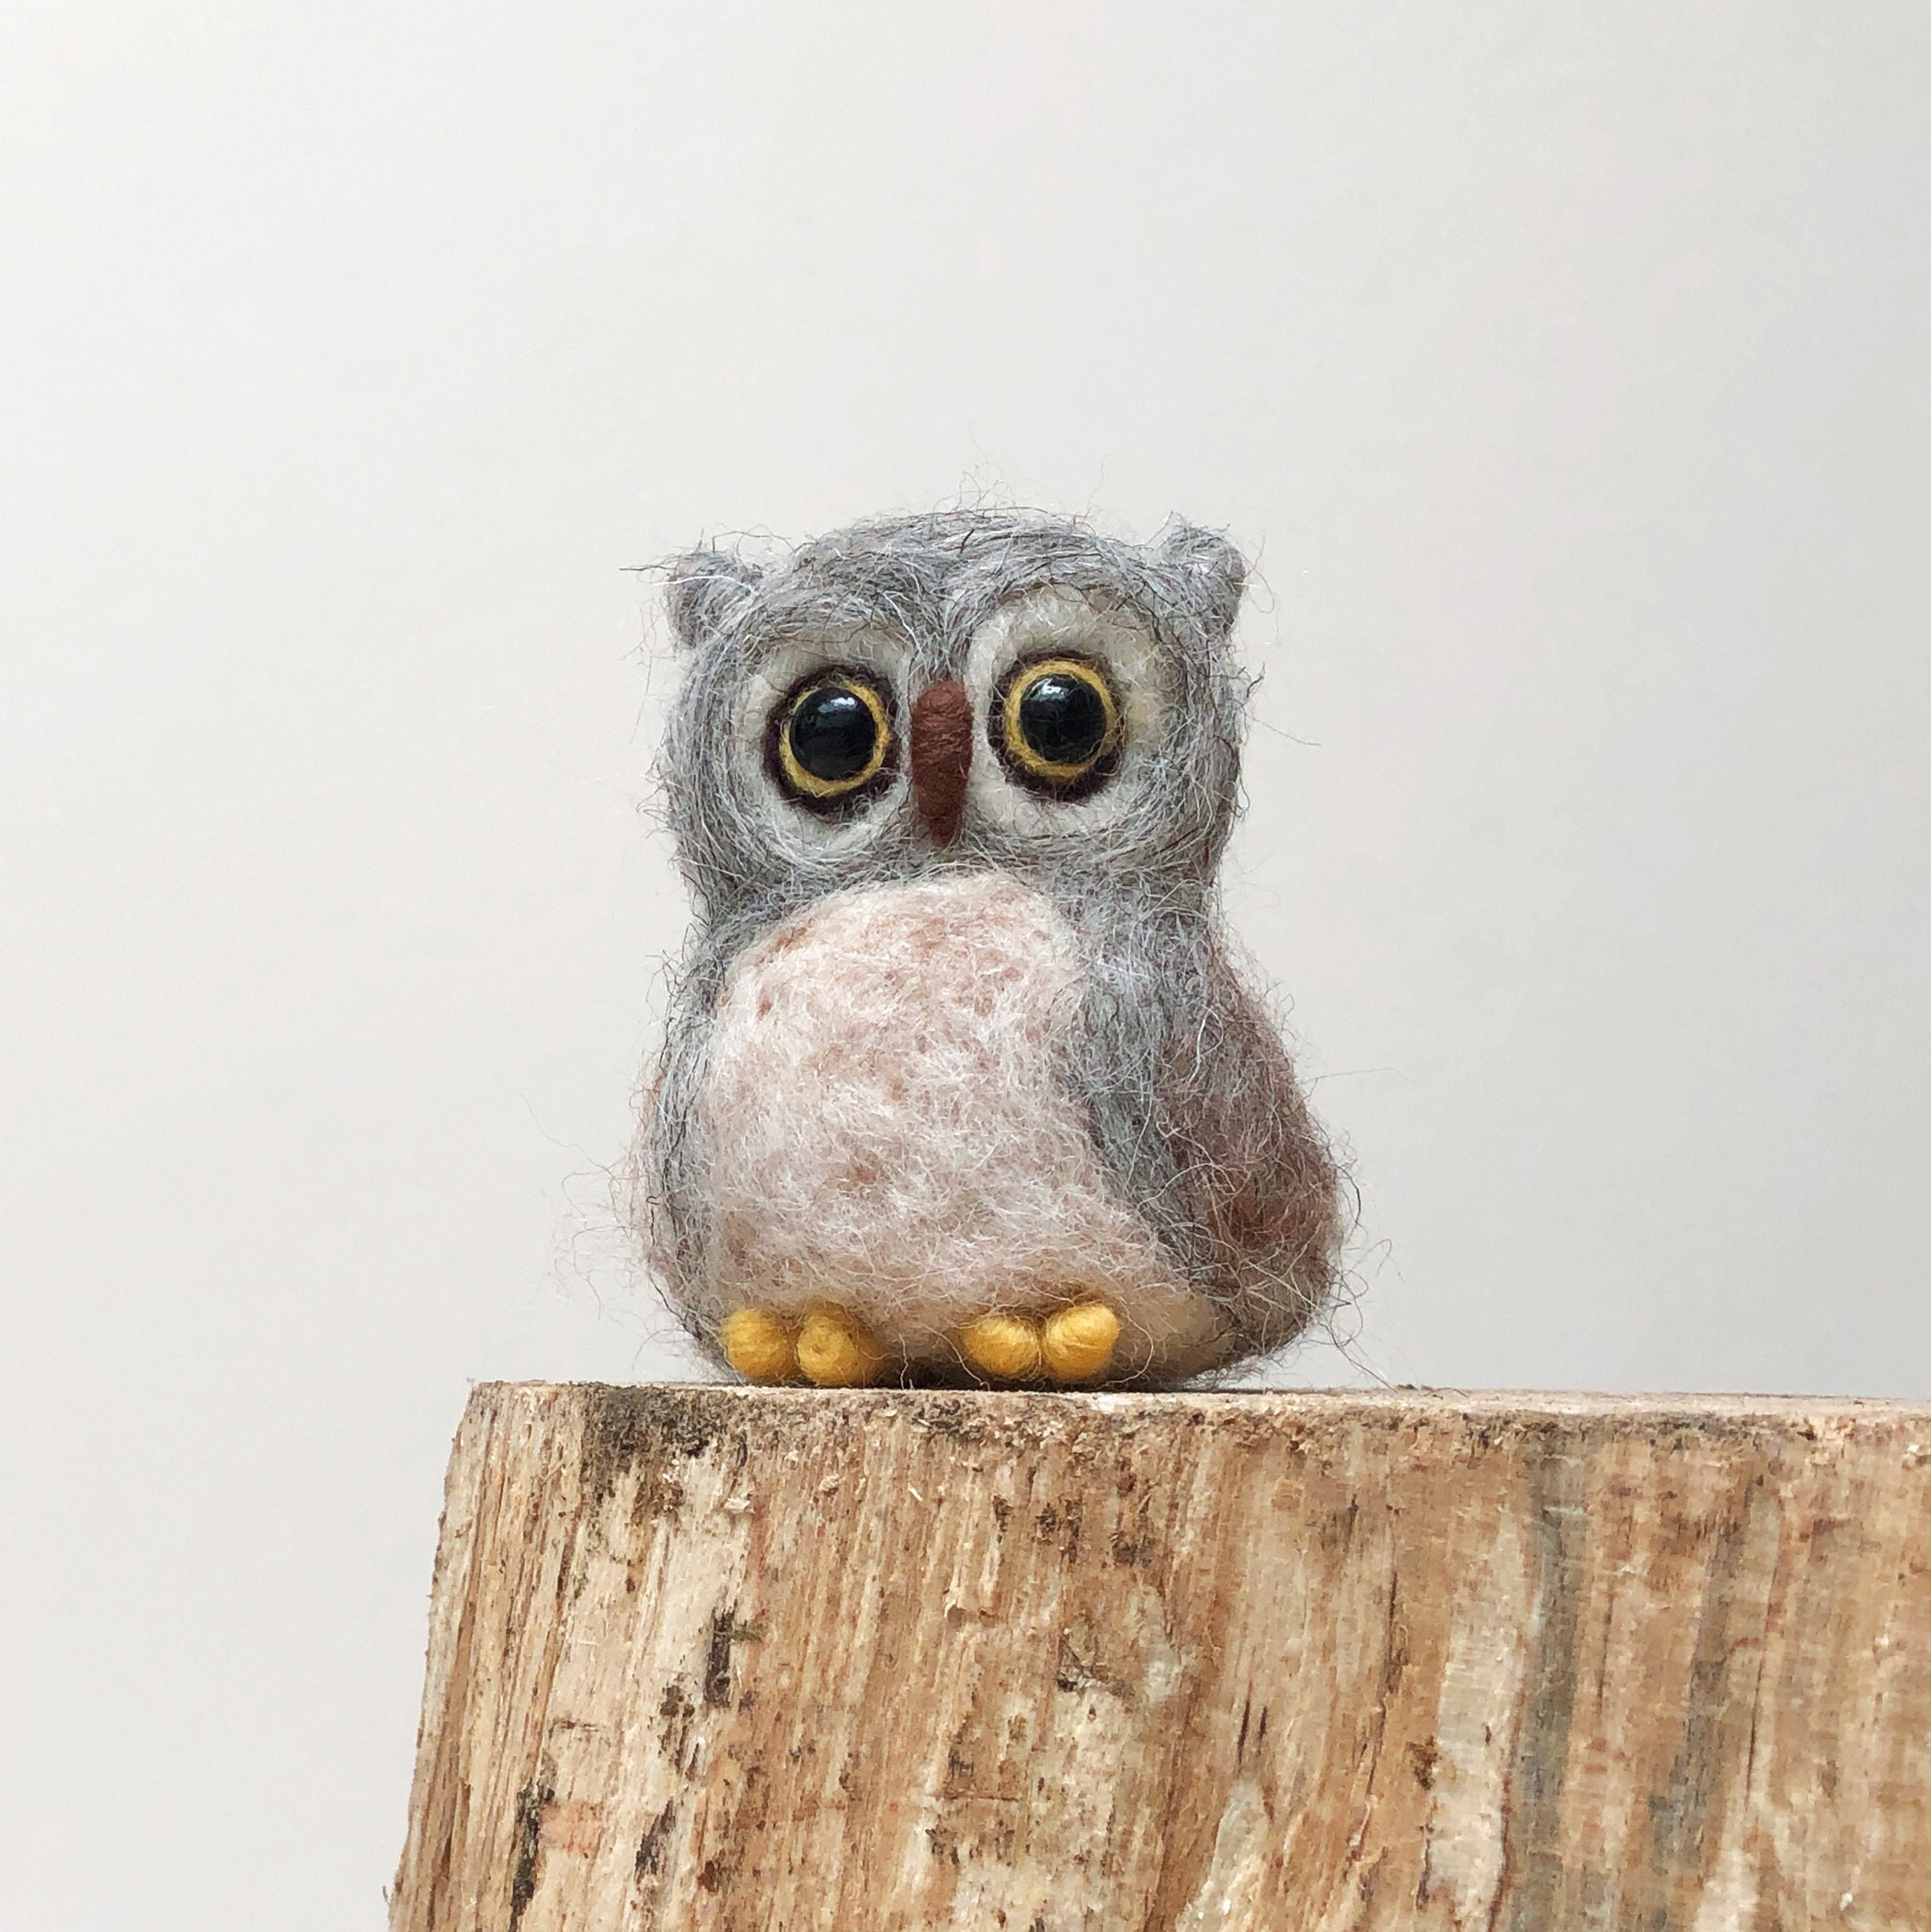 Owls Needle Felting Kit for Beginners, Needle Felting Kits Animals, Wool  Felting Kit, Owl Felting Kit, DIY Felting Kit, Kids Craft Felting 